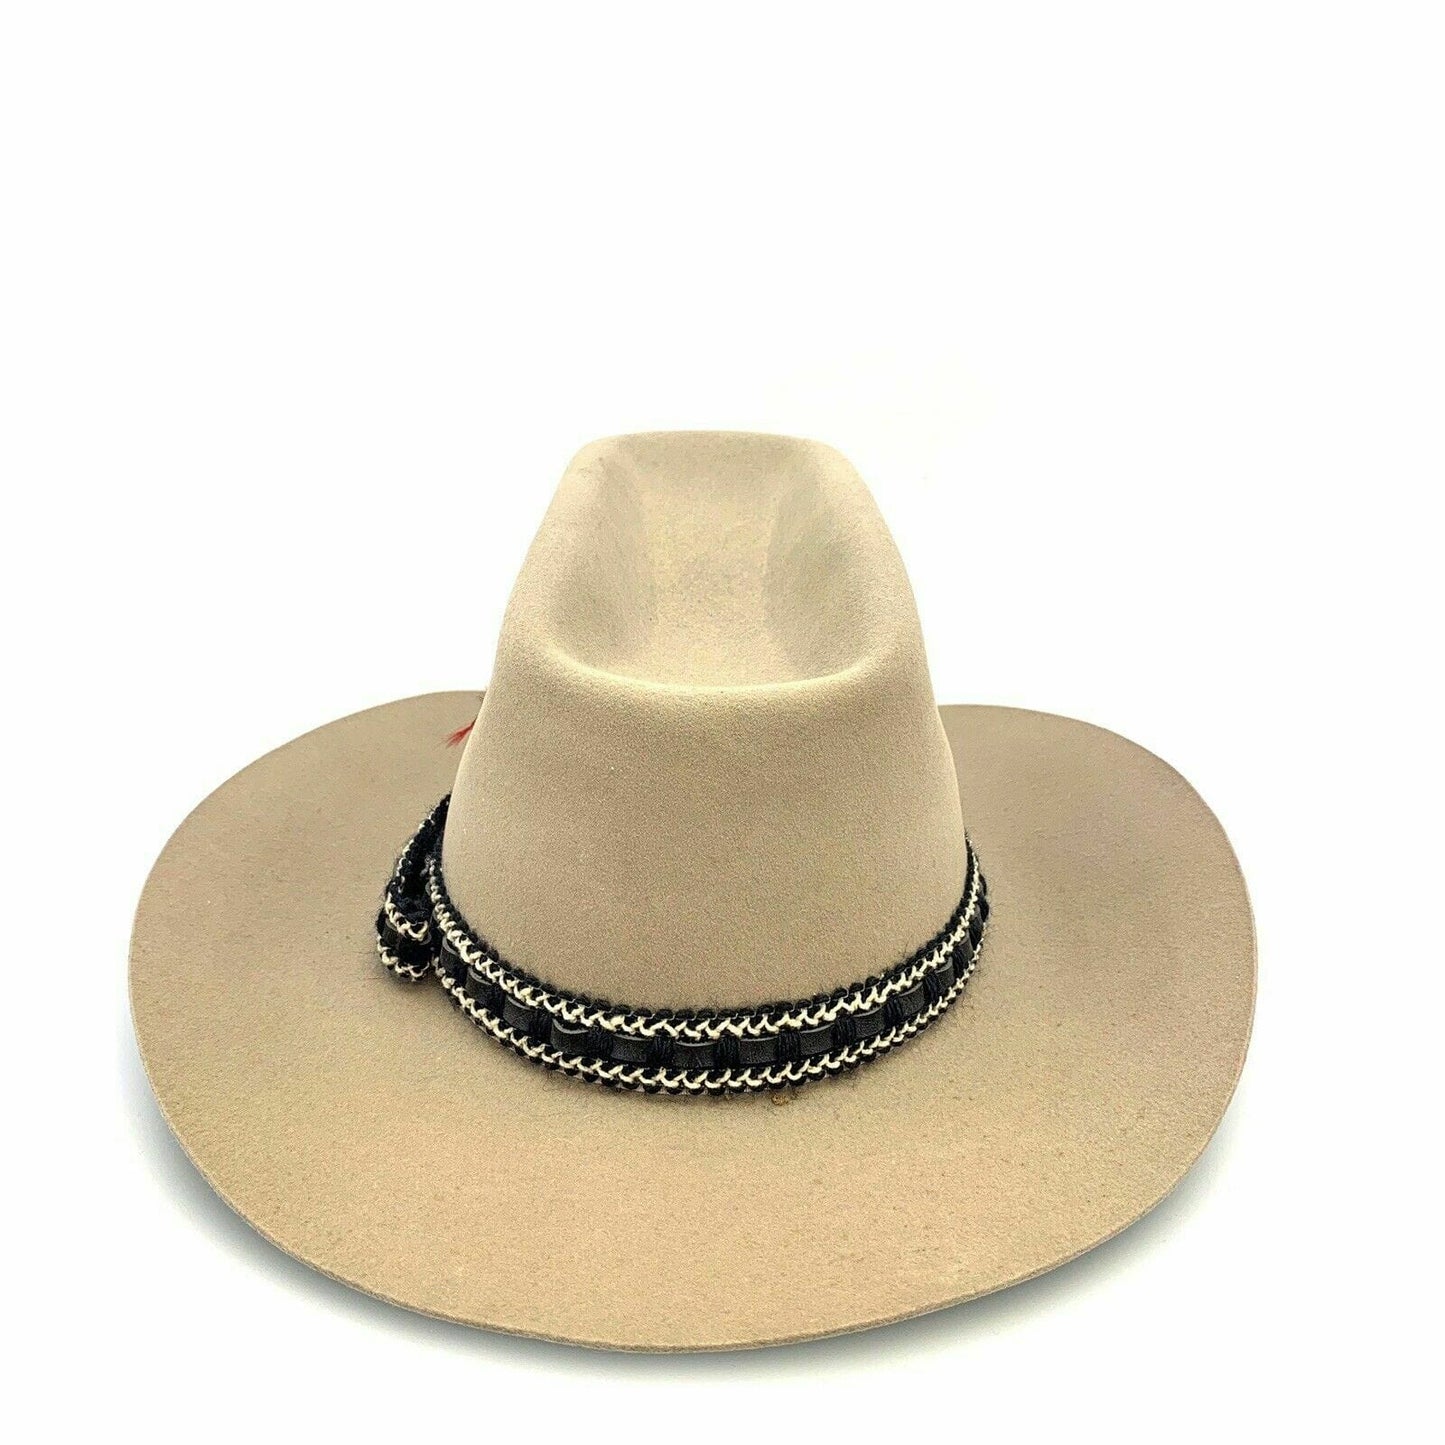 Rockmount Ranch Wear Mens Size 7 1/4” Beige Tru-West Cowboy Hat